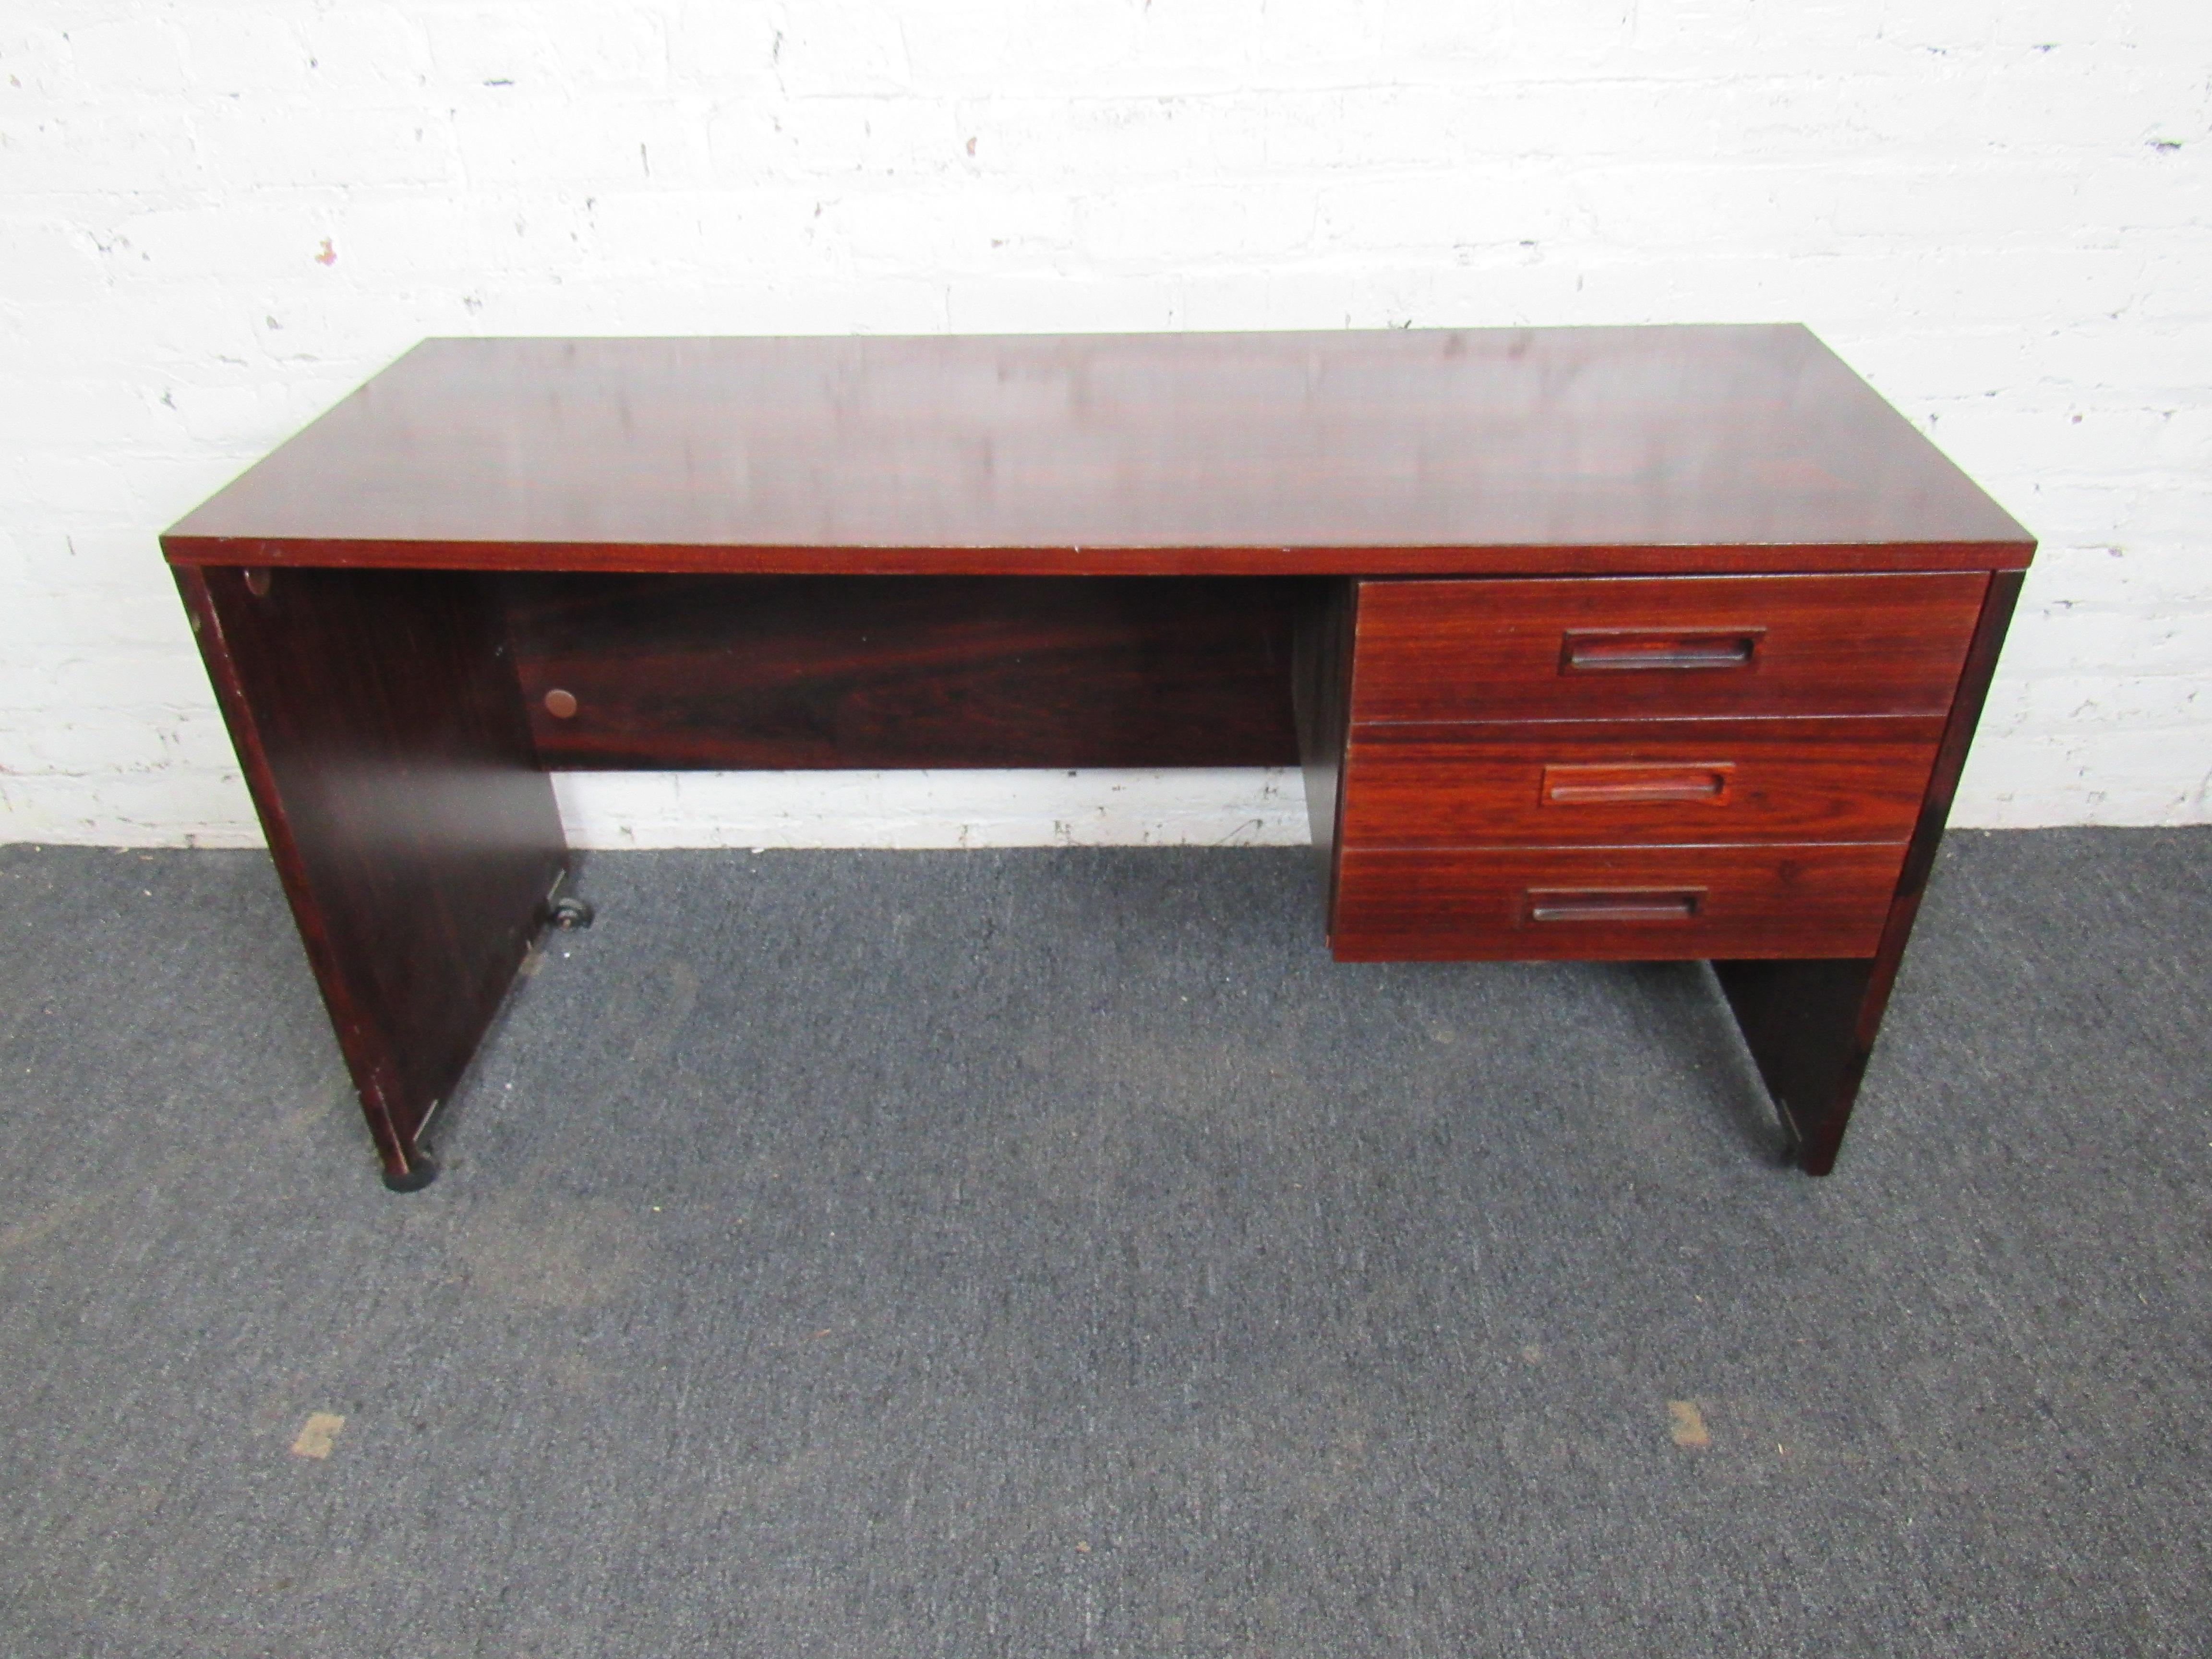 Vintage-Schreibtisch auf Rollen, in einer unglaublich reichen Palisanderfarbe. Dieser kompakte Schreibtisch ist funktional und stilvoll, mit einem minimalen Design und drei Schubladen für die Organisation. Bitte bestätigen Sie den Standort des